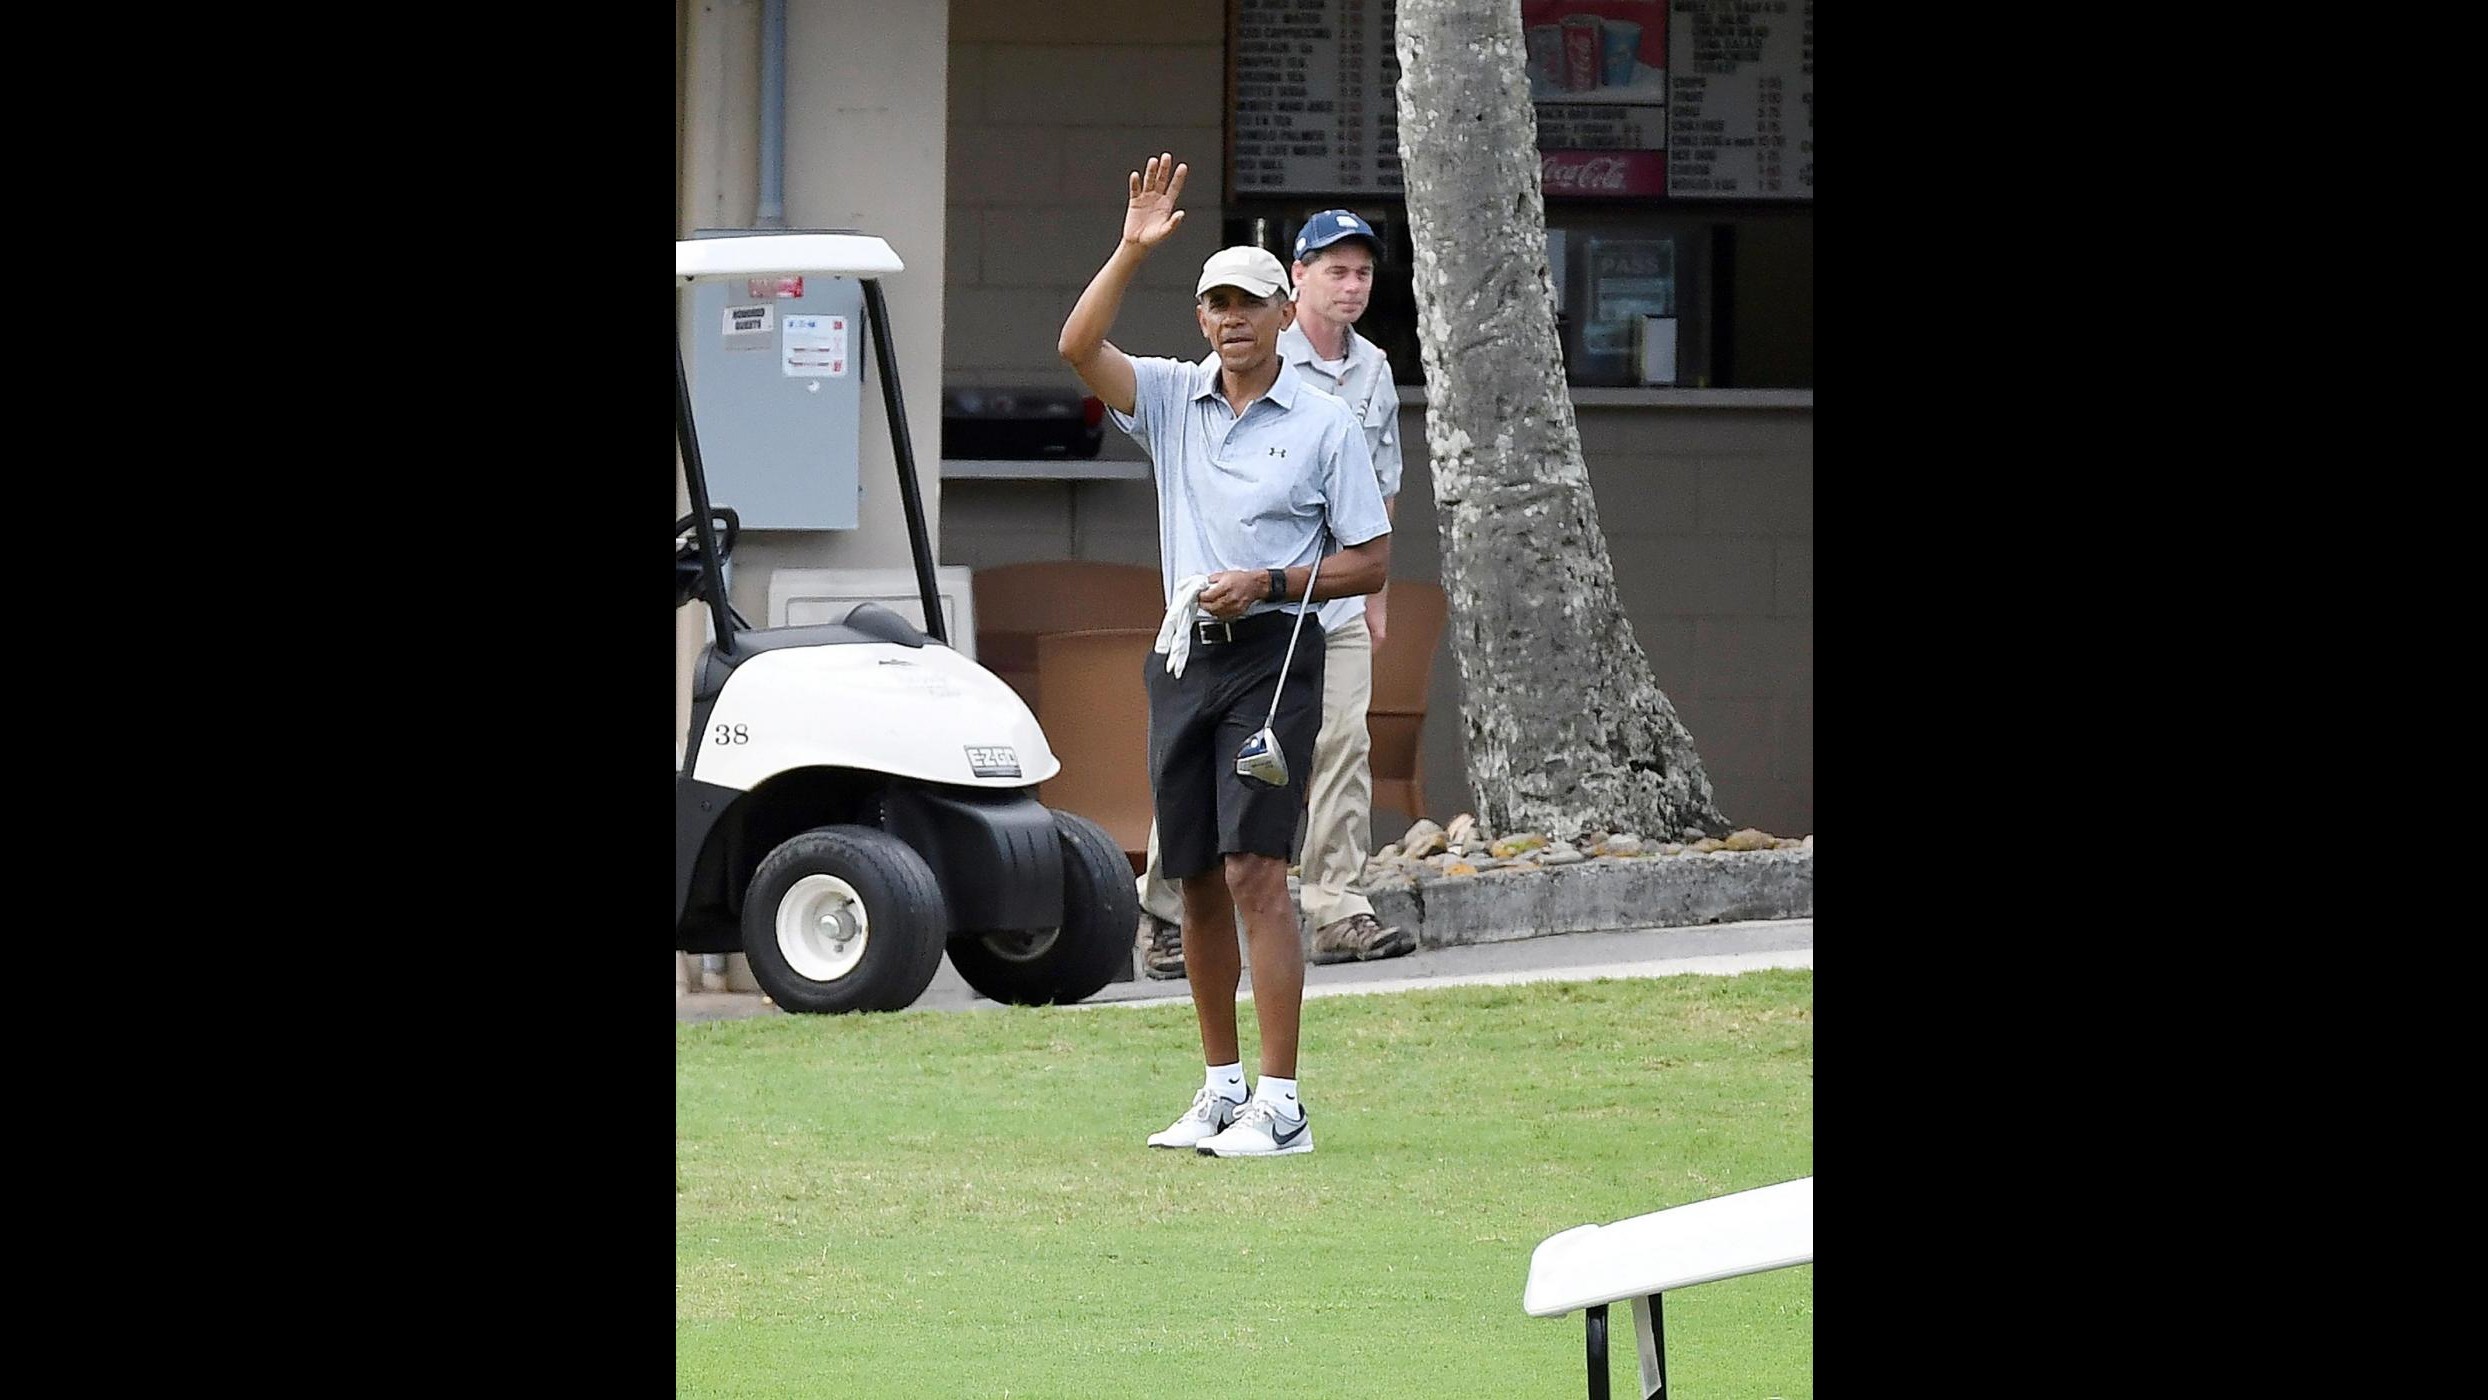 FOTO Relax alle Hawaii per Obama sul campo da golf